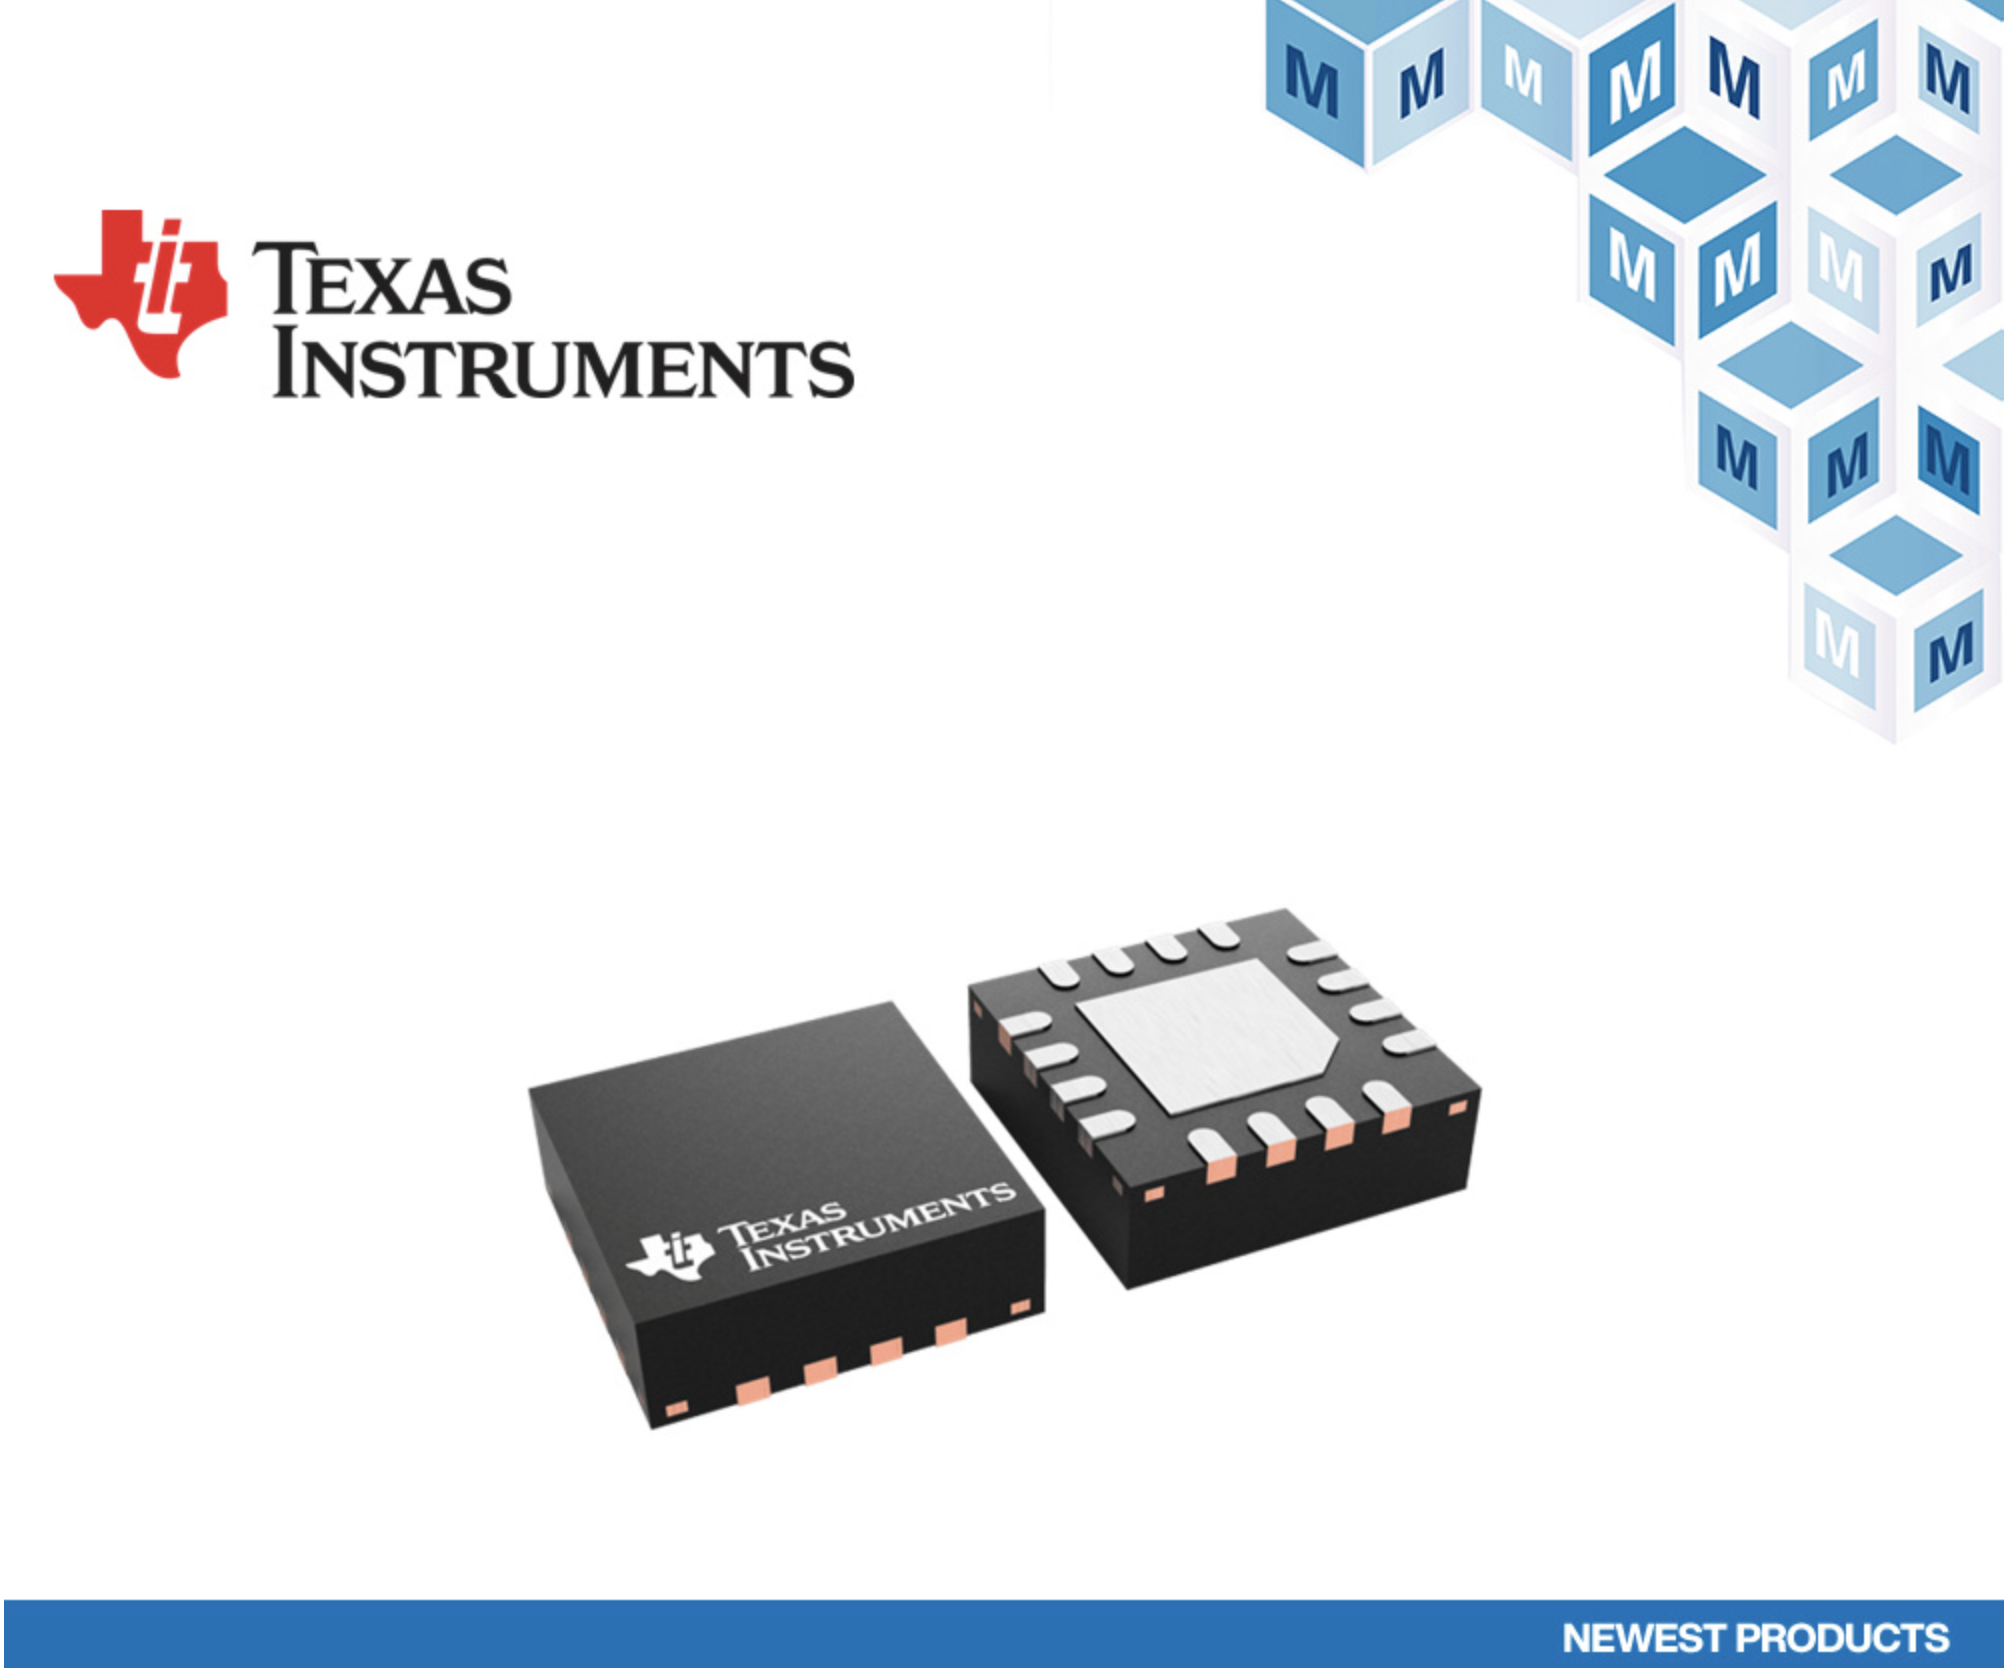 贸泽开售TI BUF802缓冲运算放大器助力简化用于测量工作的DAQ前端